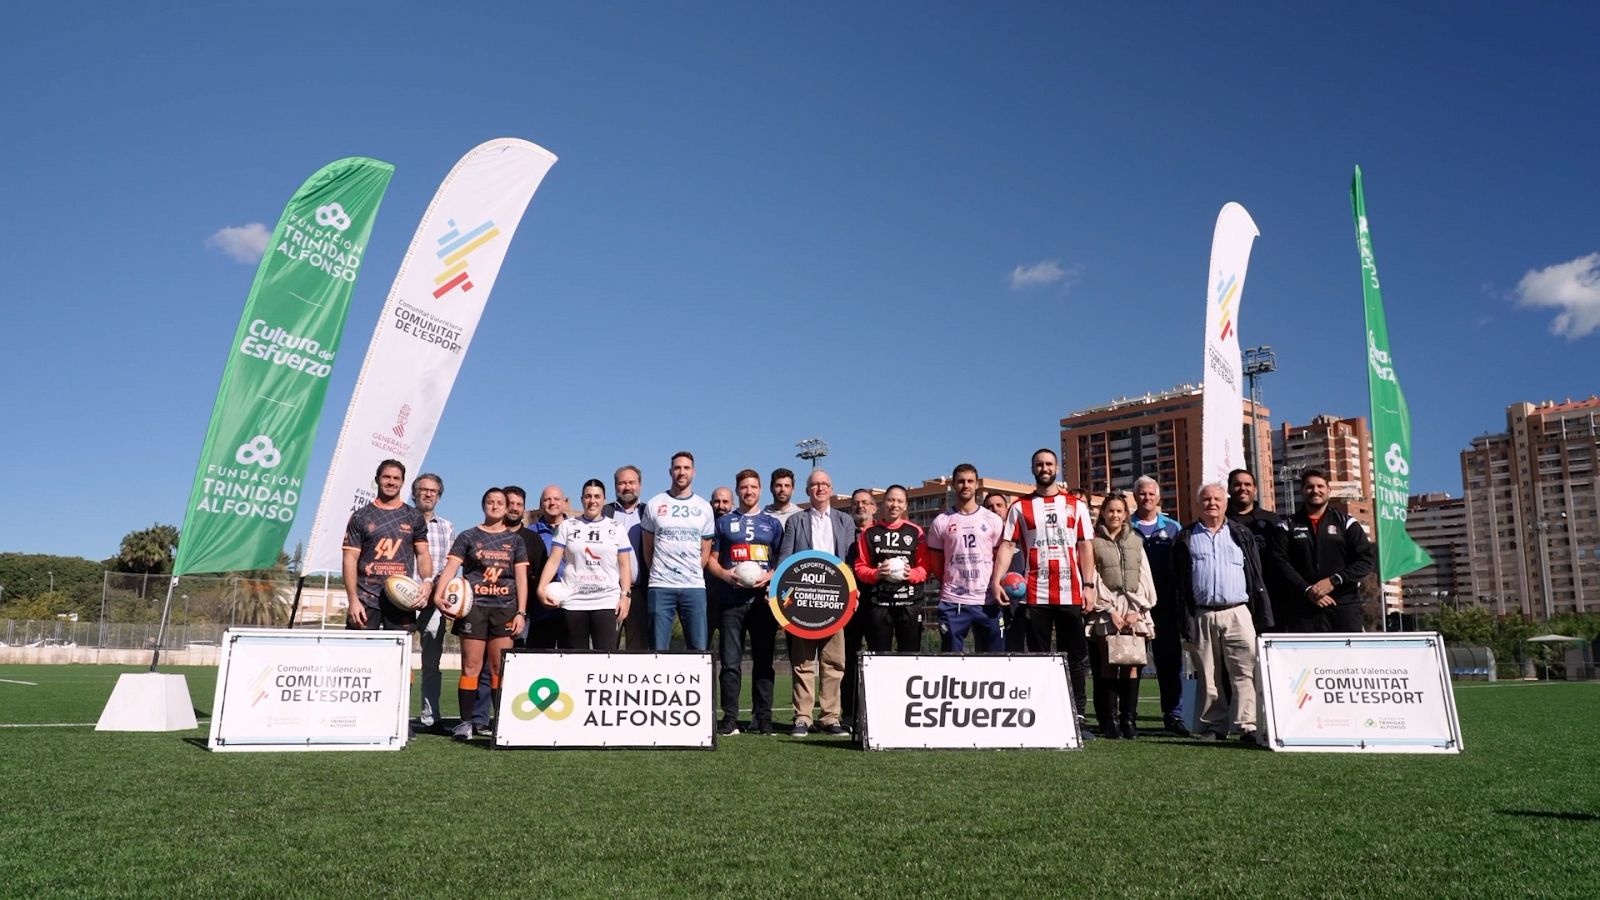 Deportistas - Programa 42: La Fundación Trinidad Alfonso se vuelca con los clubes valencianos